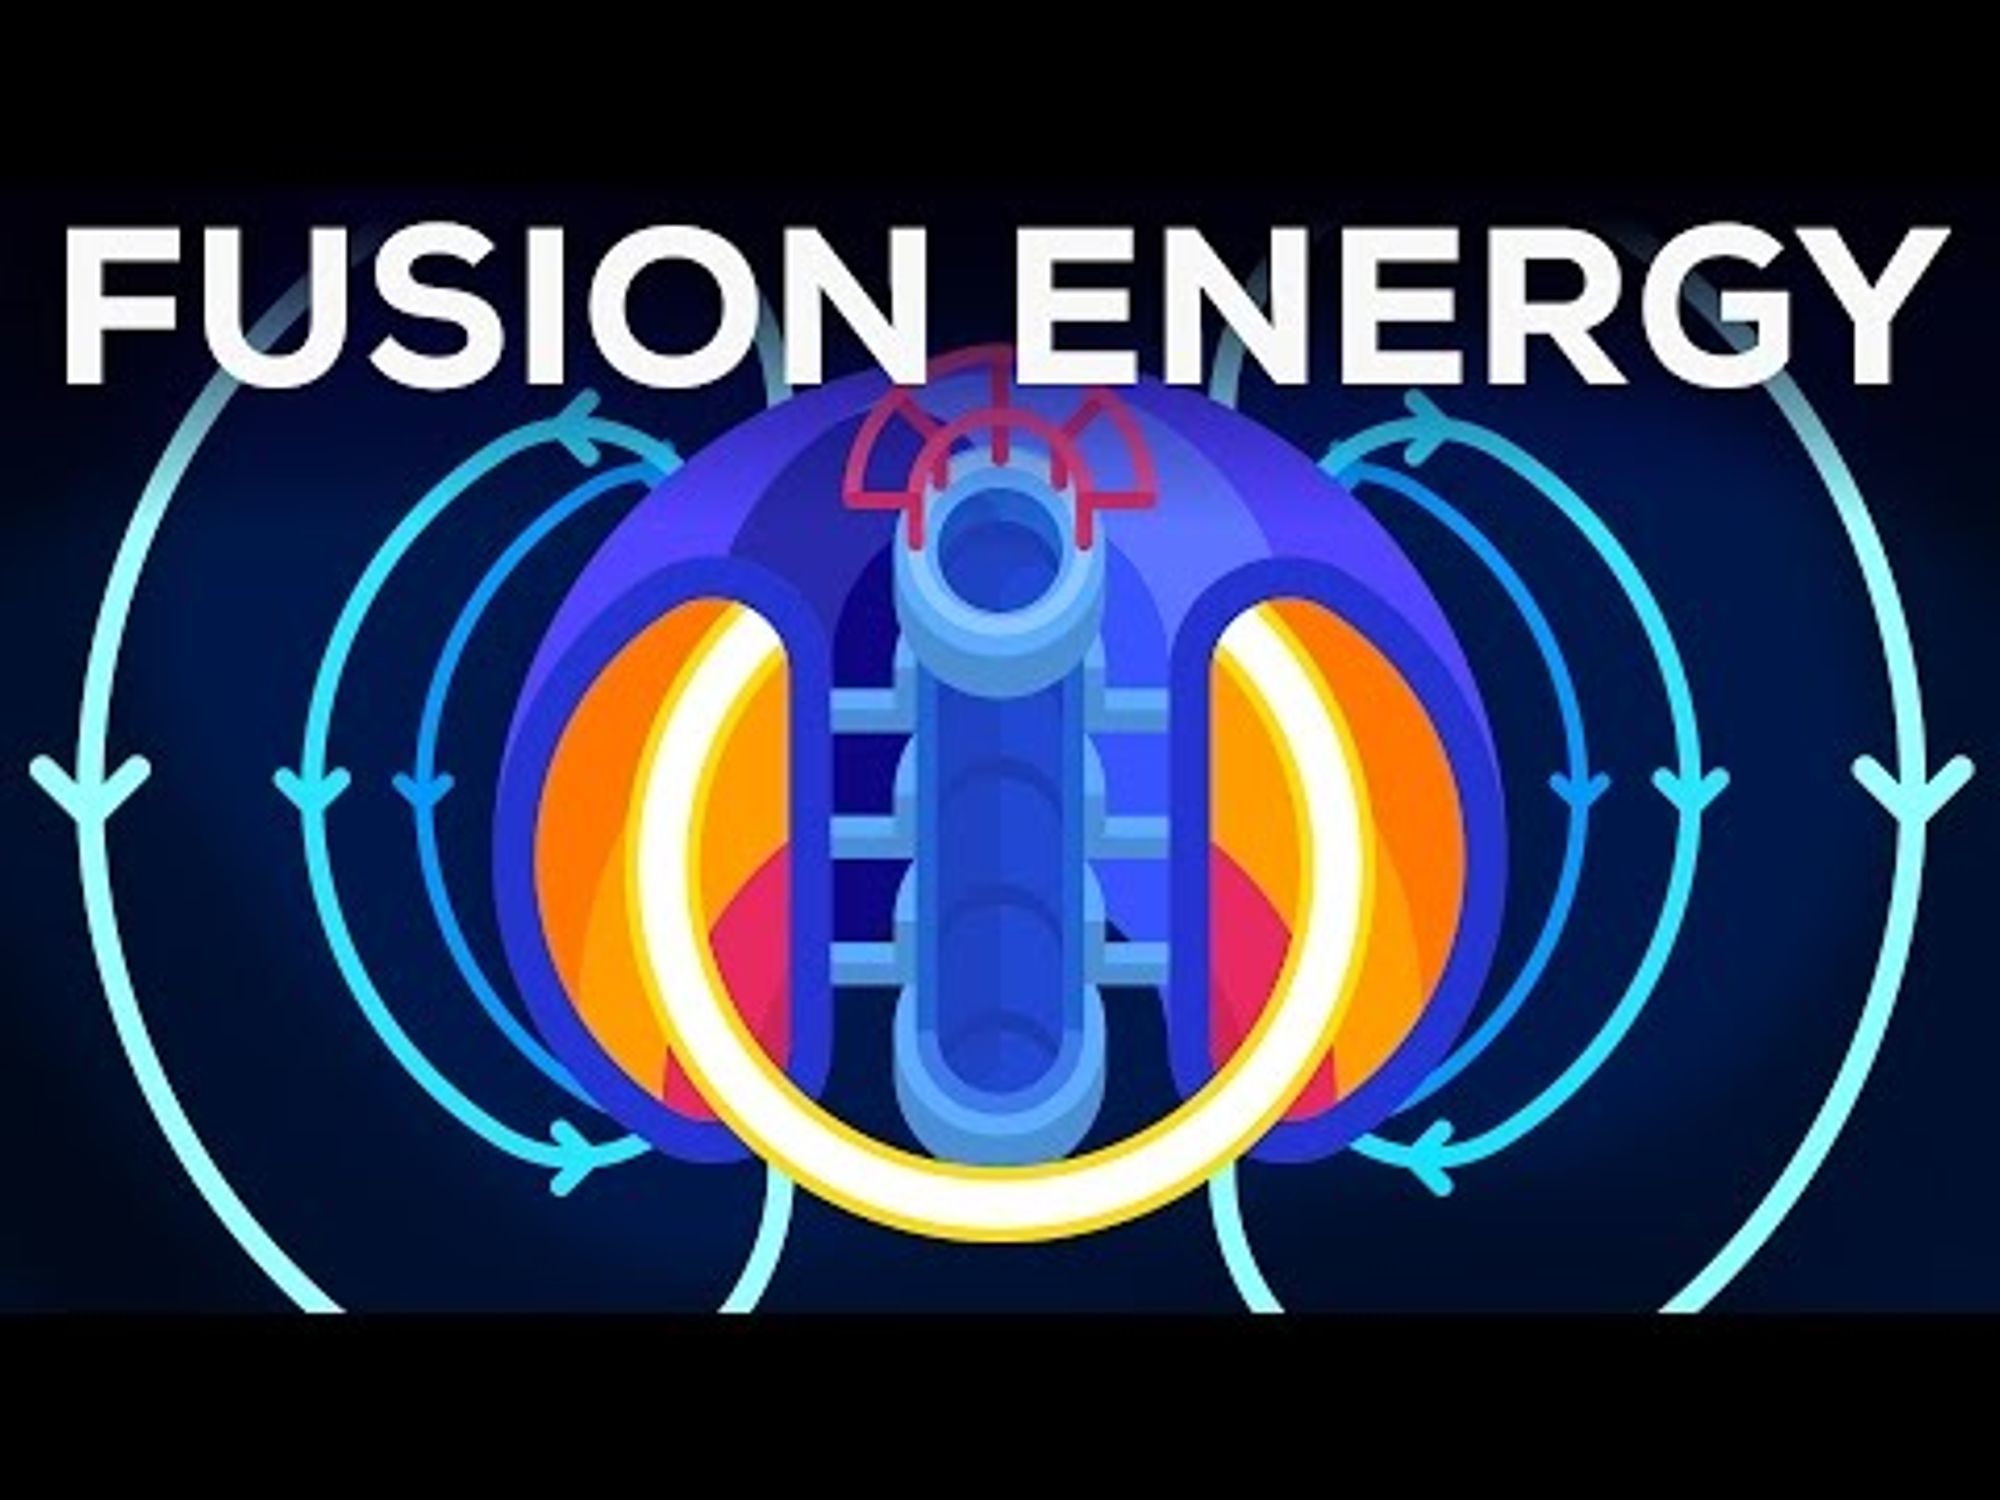 Fusion Power Explained - Future or Failure